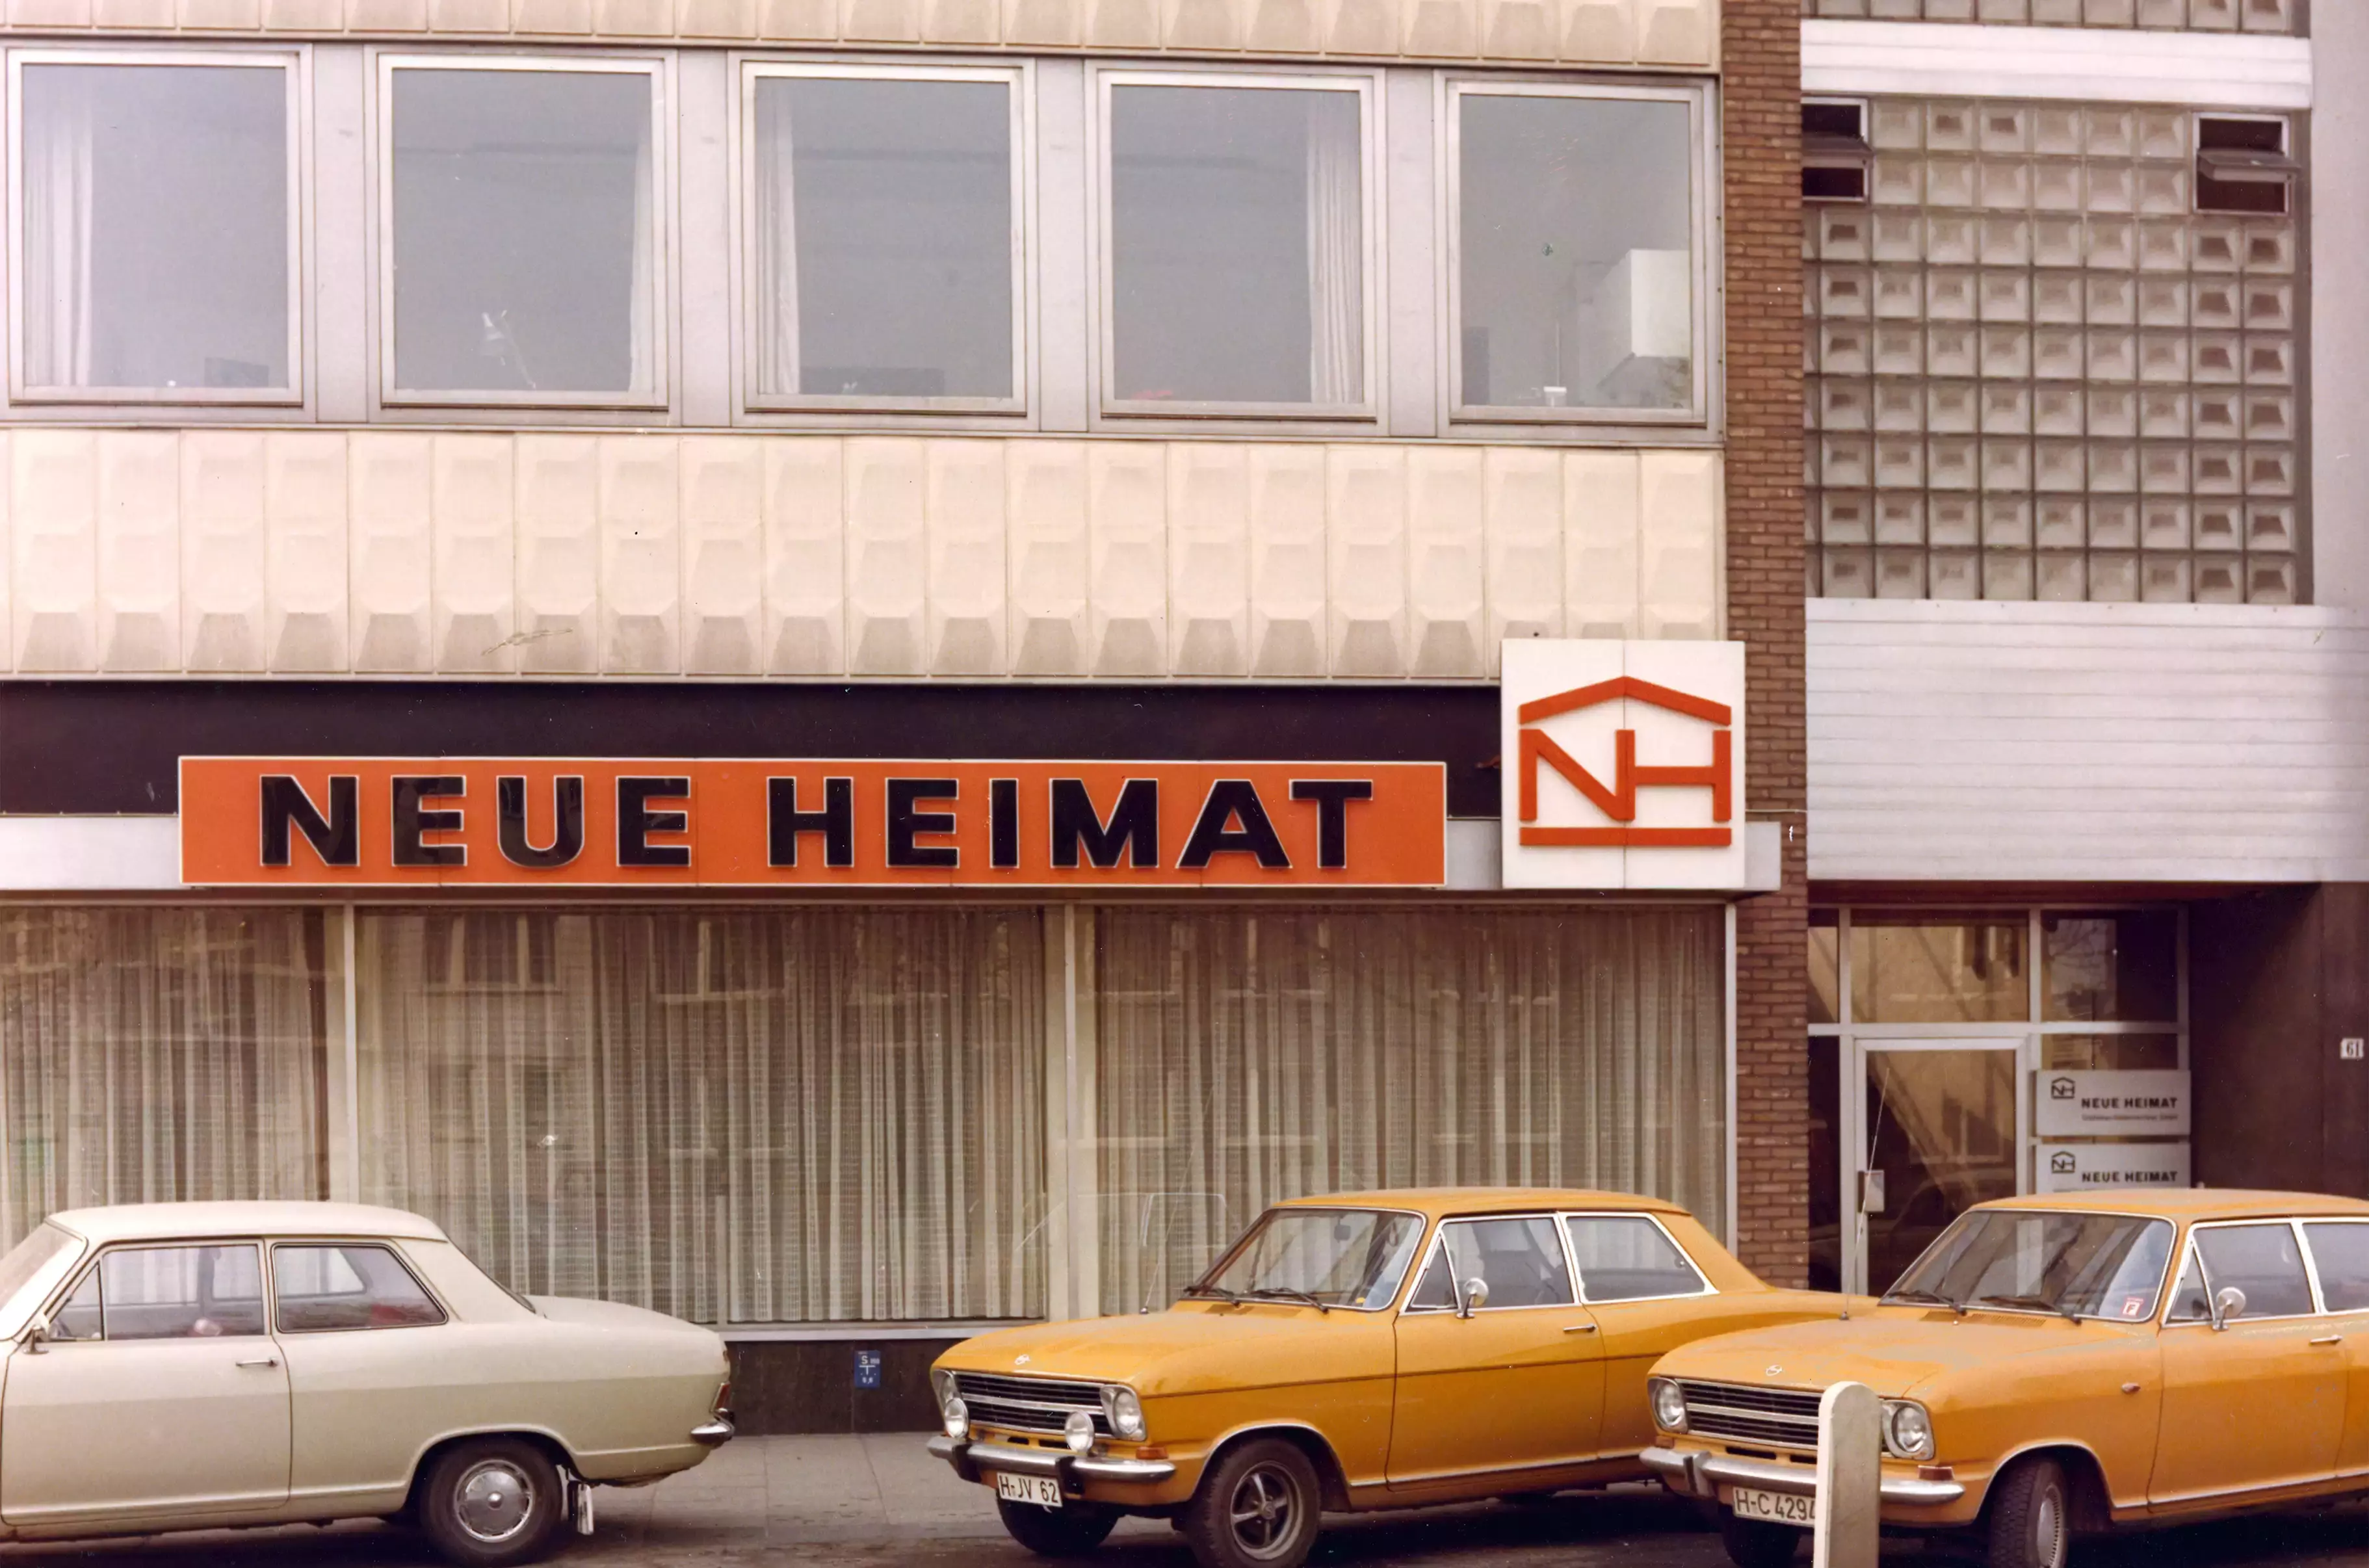 Gelbe Autos vor einem Büro mit orangem Schild "Neue Heimat"